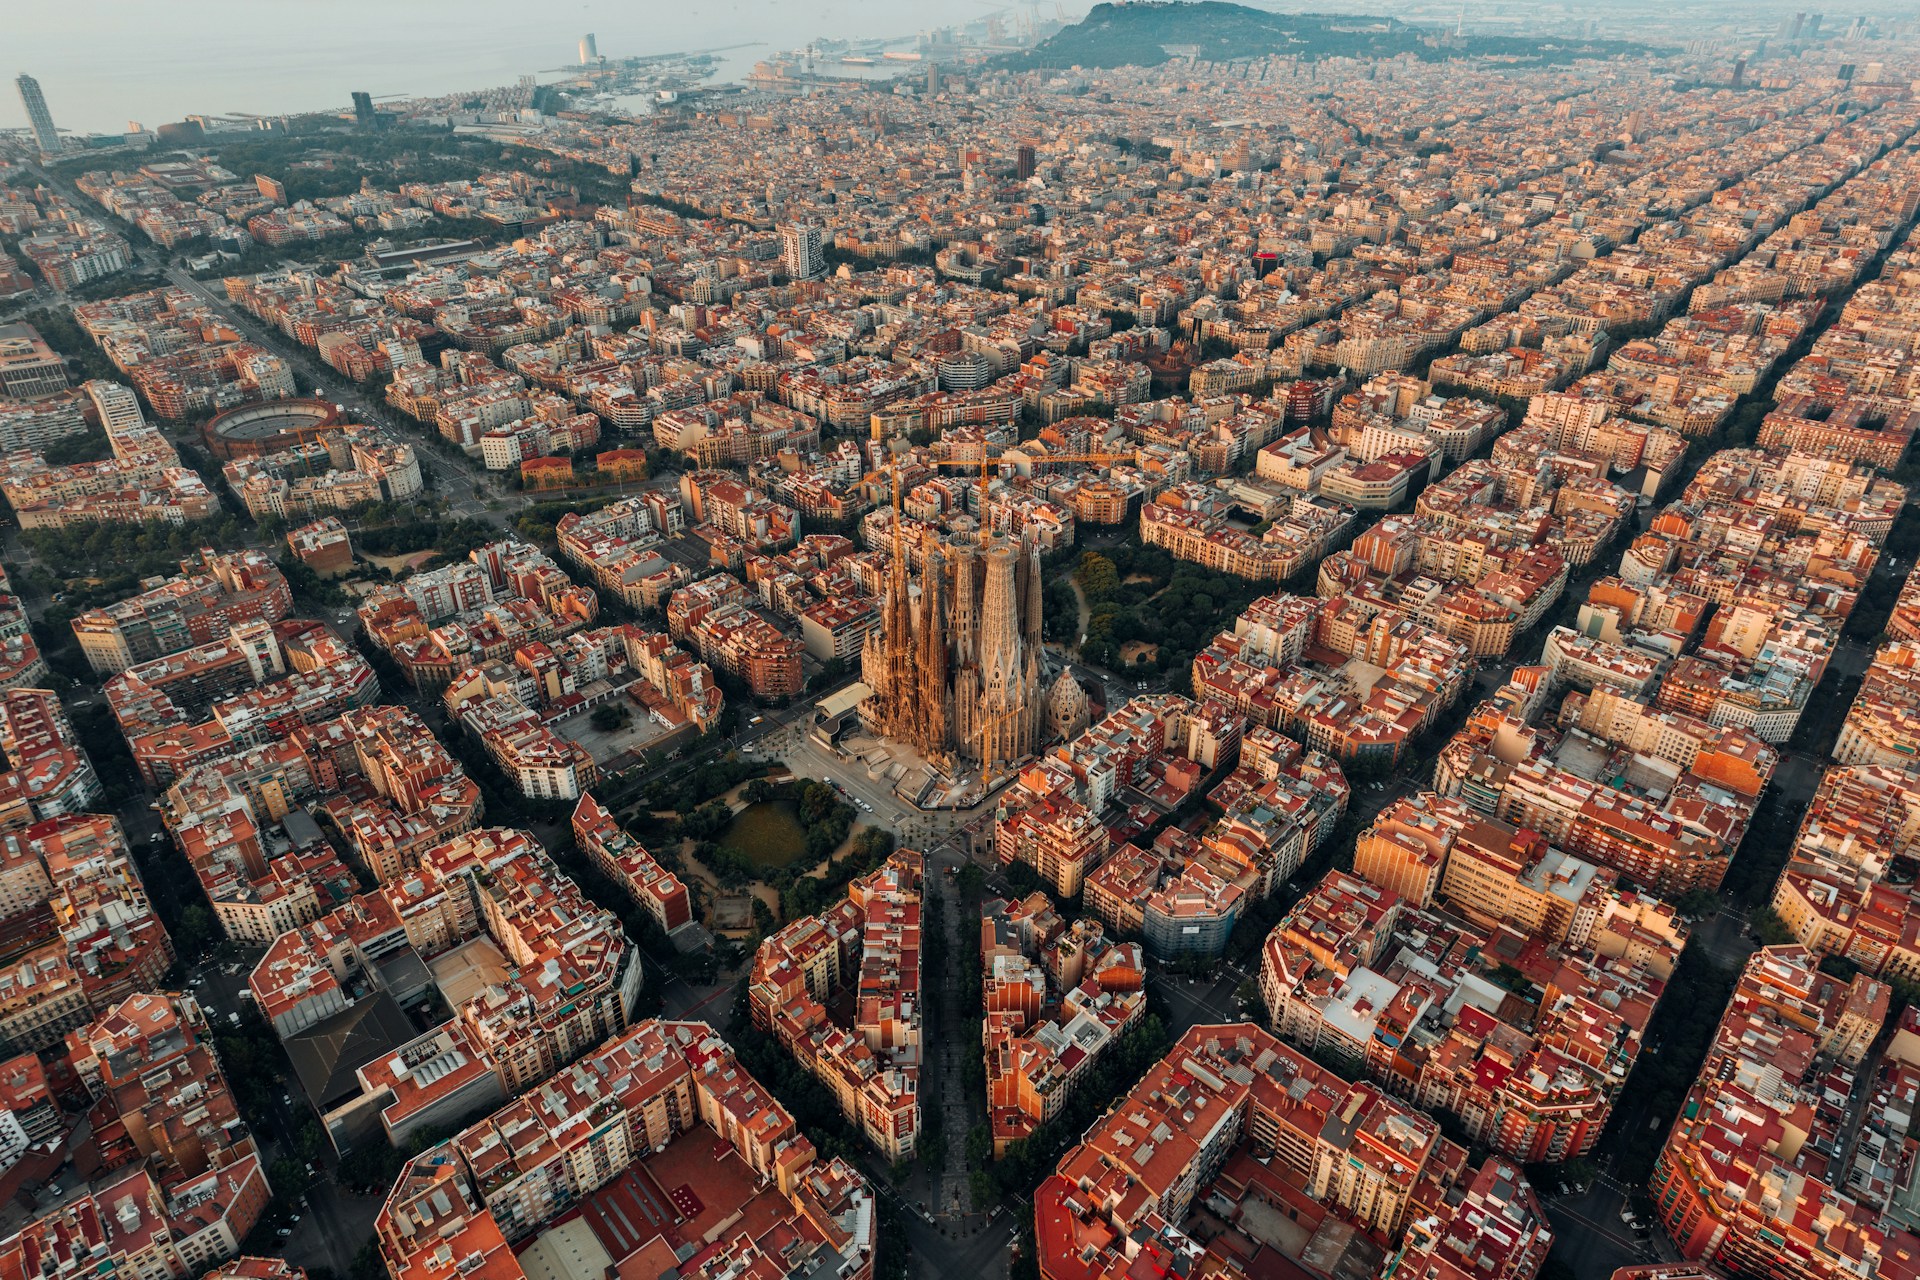 vista de cima da cidade de Barcelona, mostrando a sagrada família e os quarteróes que formam pátios internos